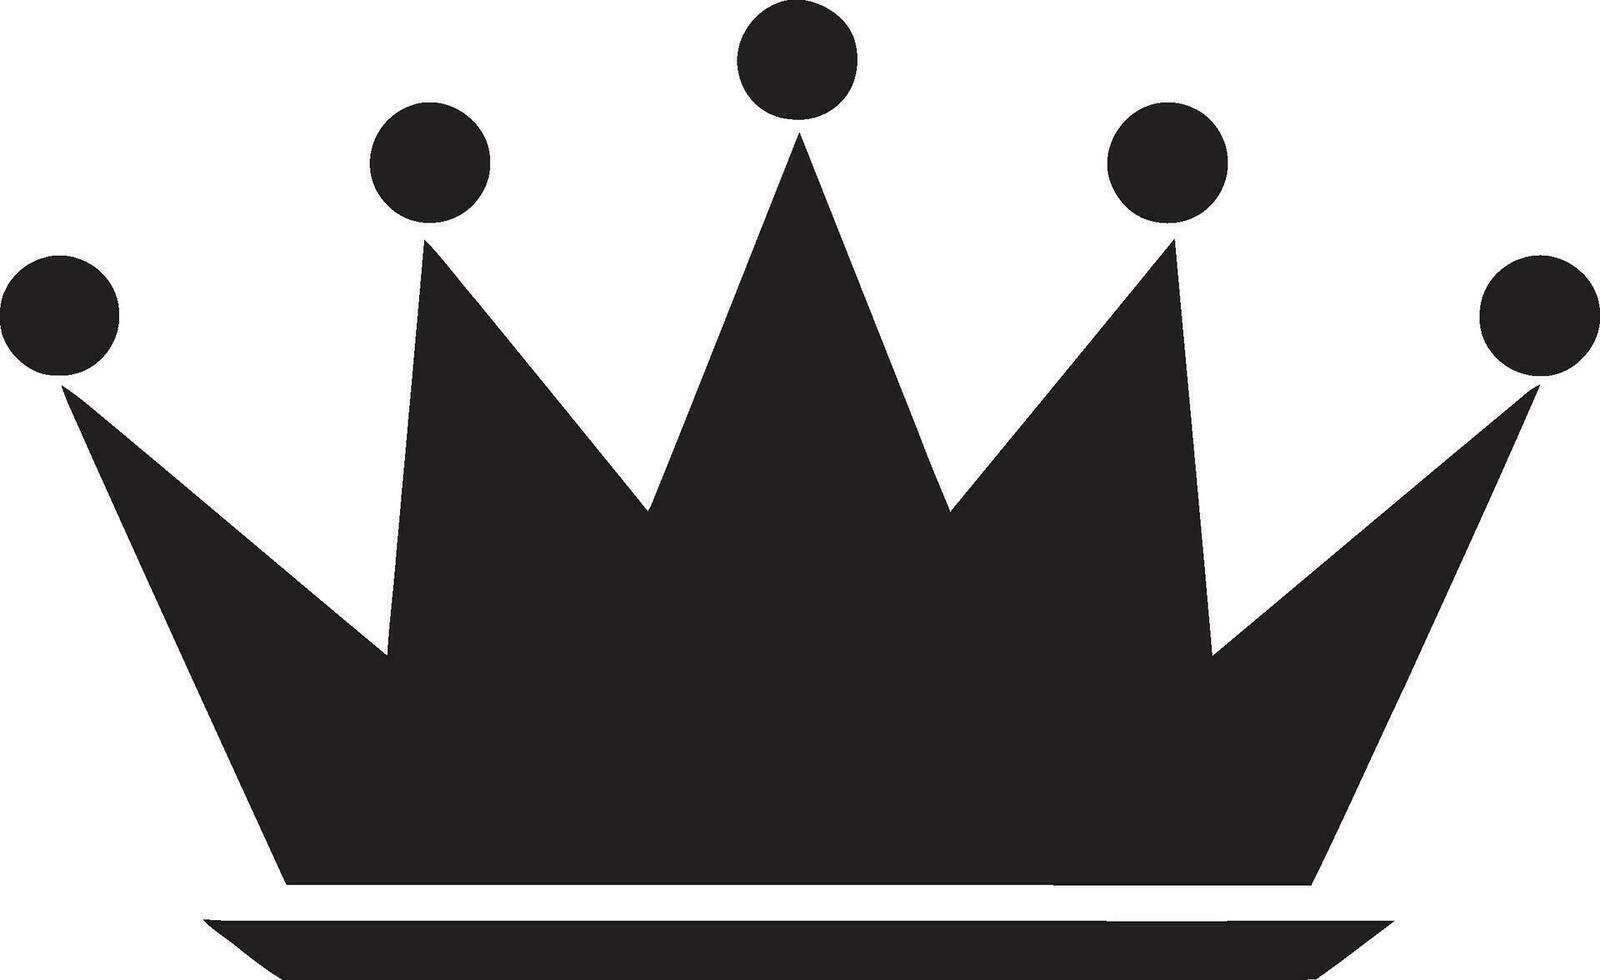 elegant suveränitet krona design i svart symbol av royalty svart krona emblem vektor